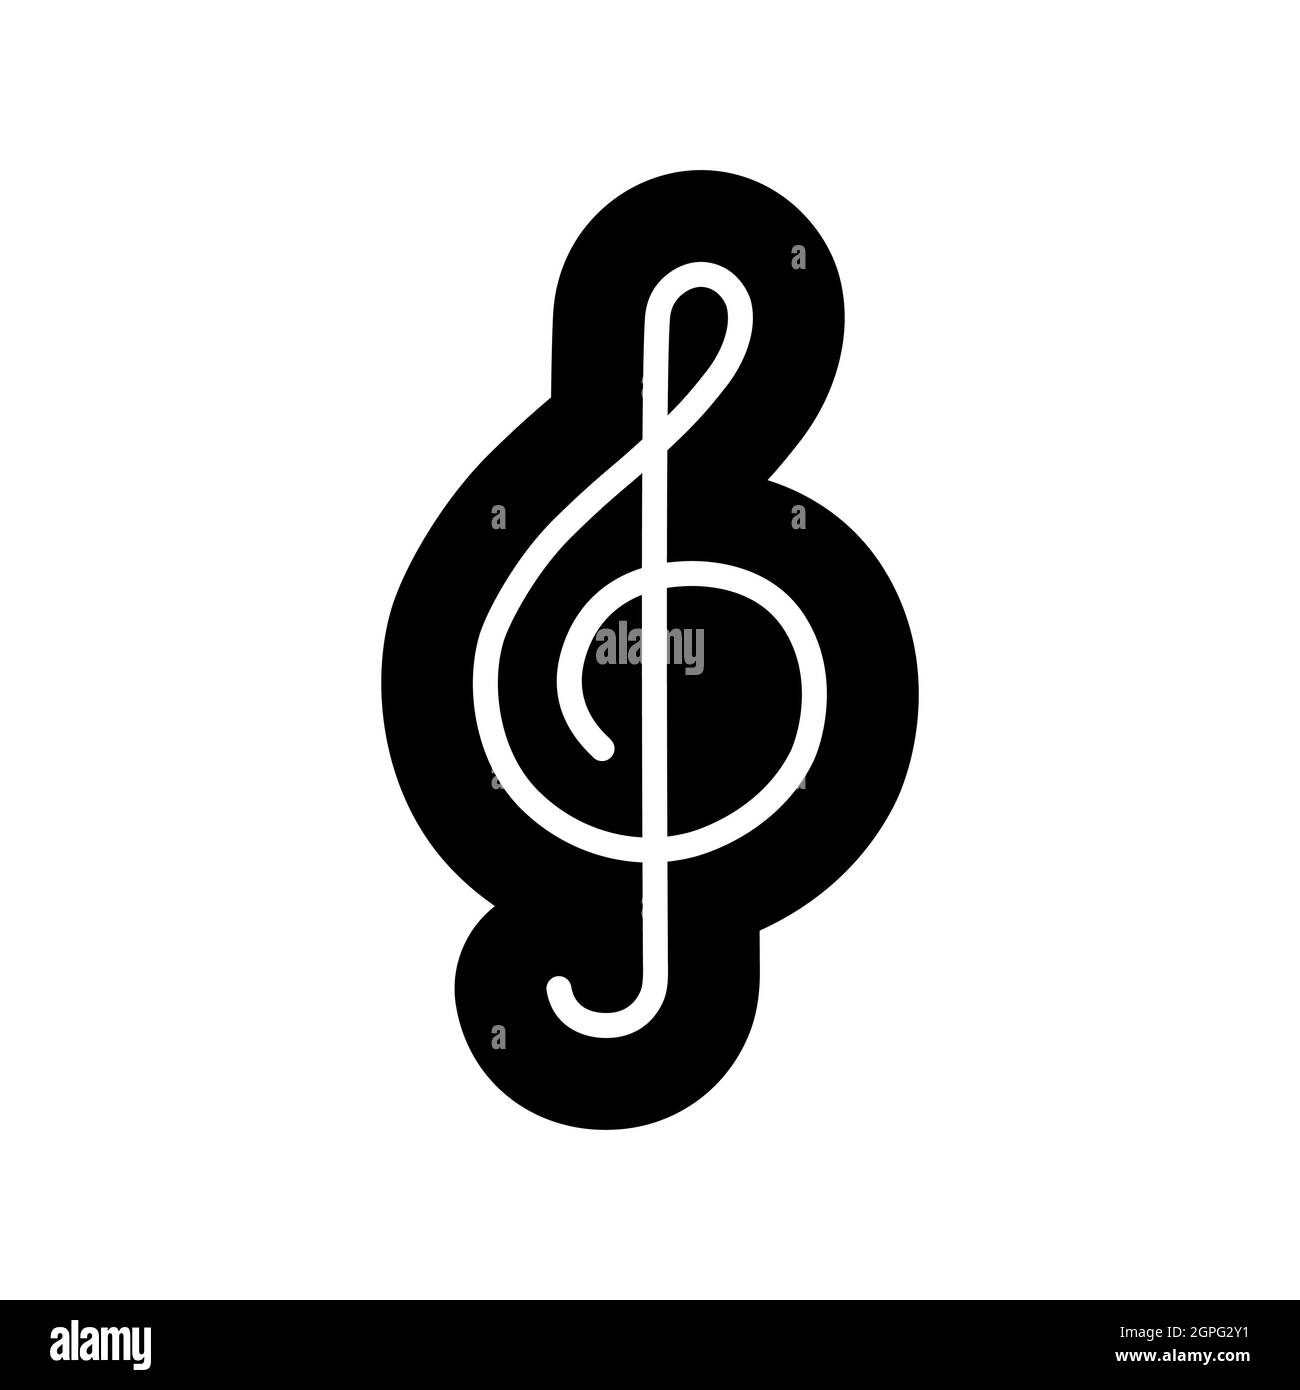 Icona glifo vettoriale clef alti. Cartello musicale Illustrazione Vettoriale